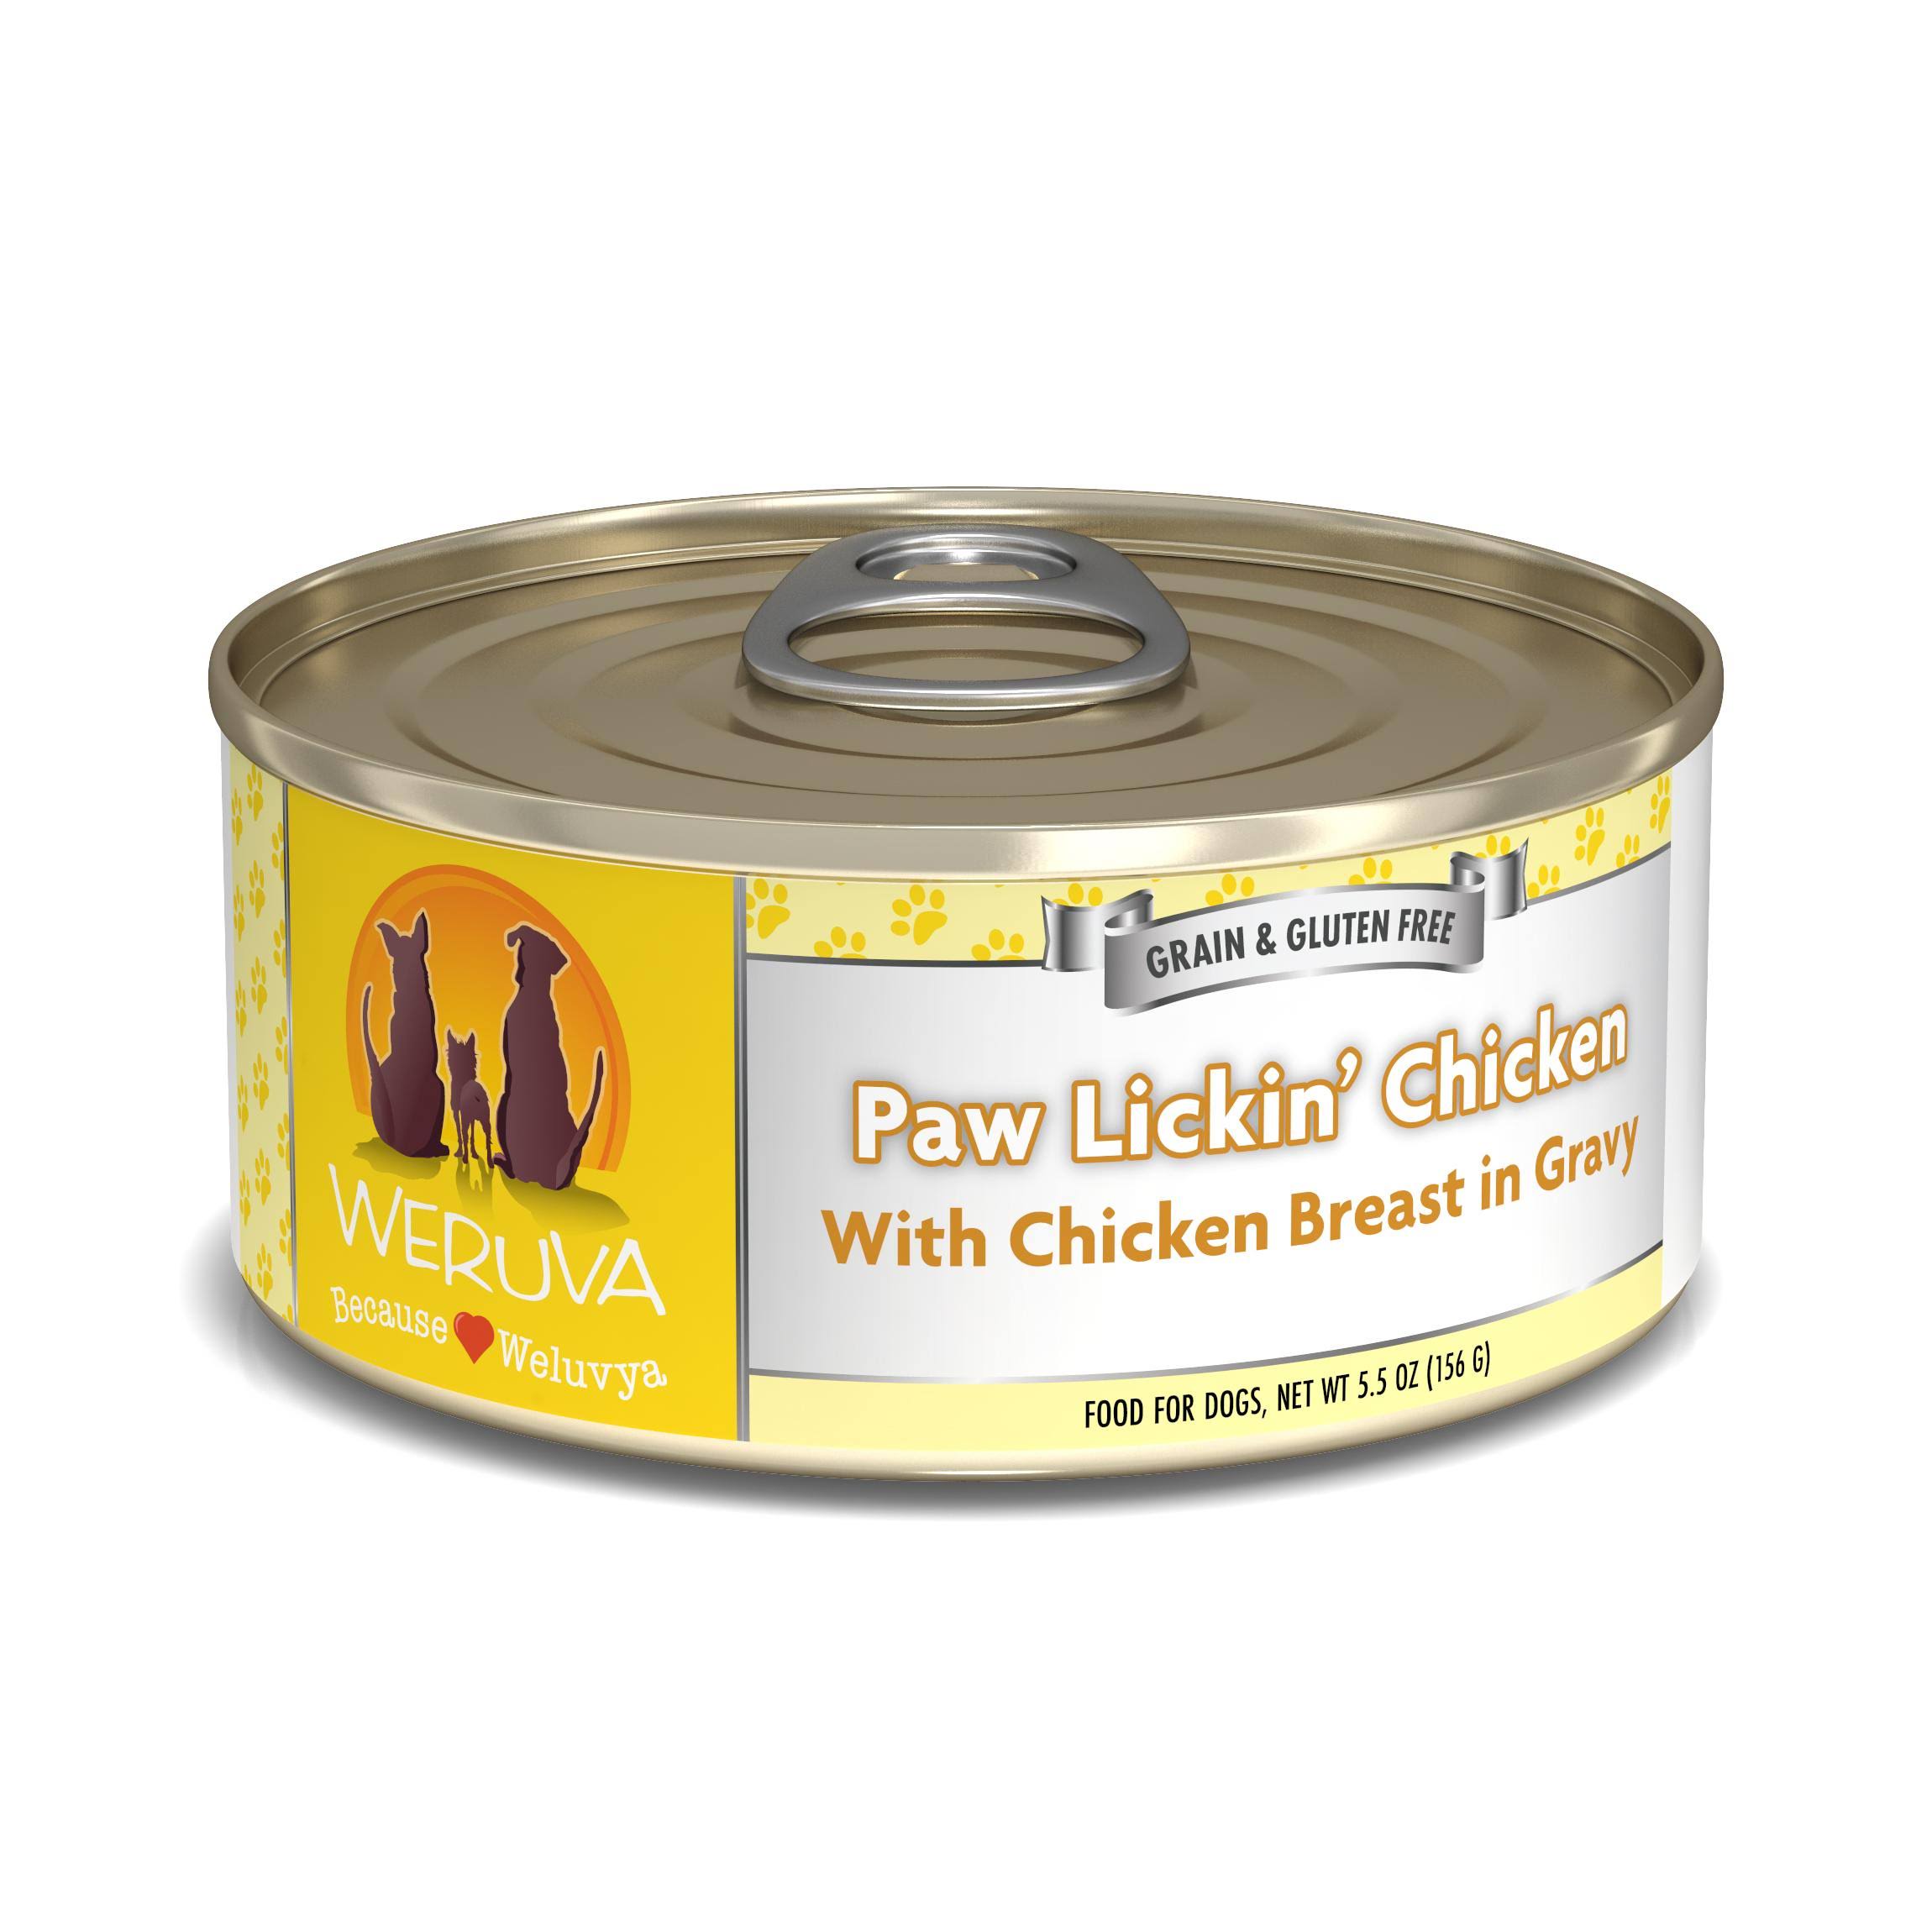 Weruva Canned Dog Food - Paw Lickin' Chicken 5.5 oz